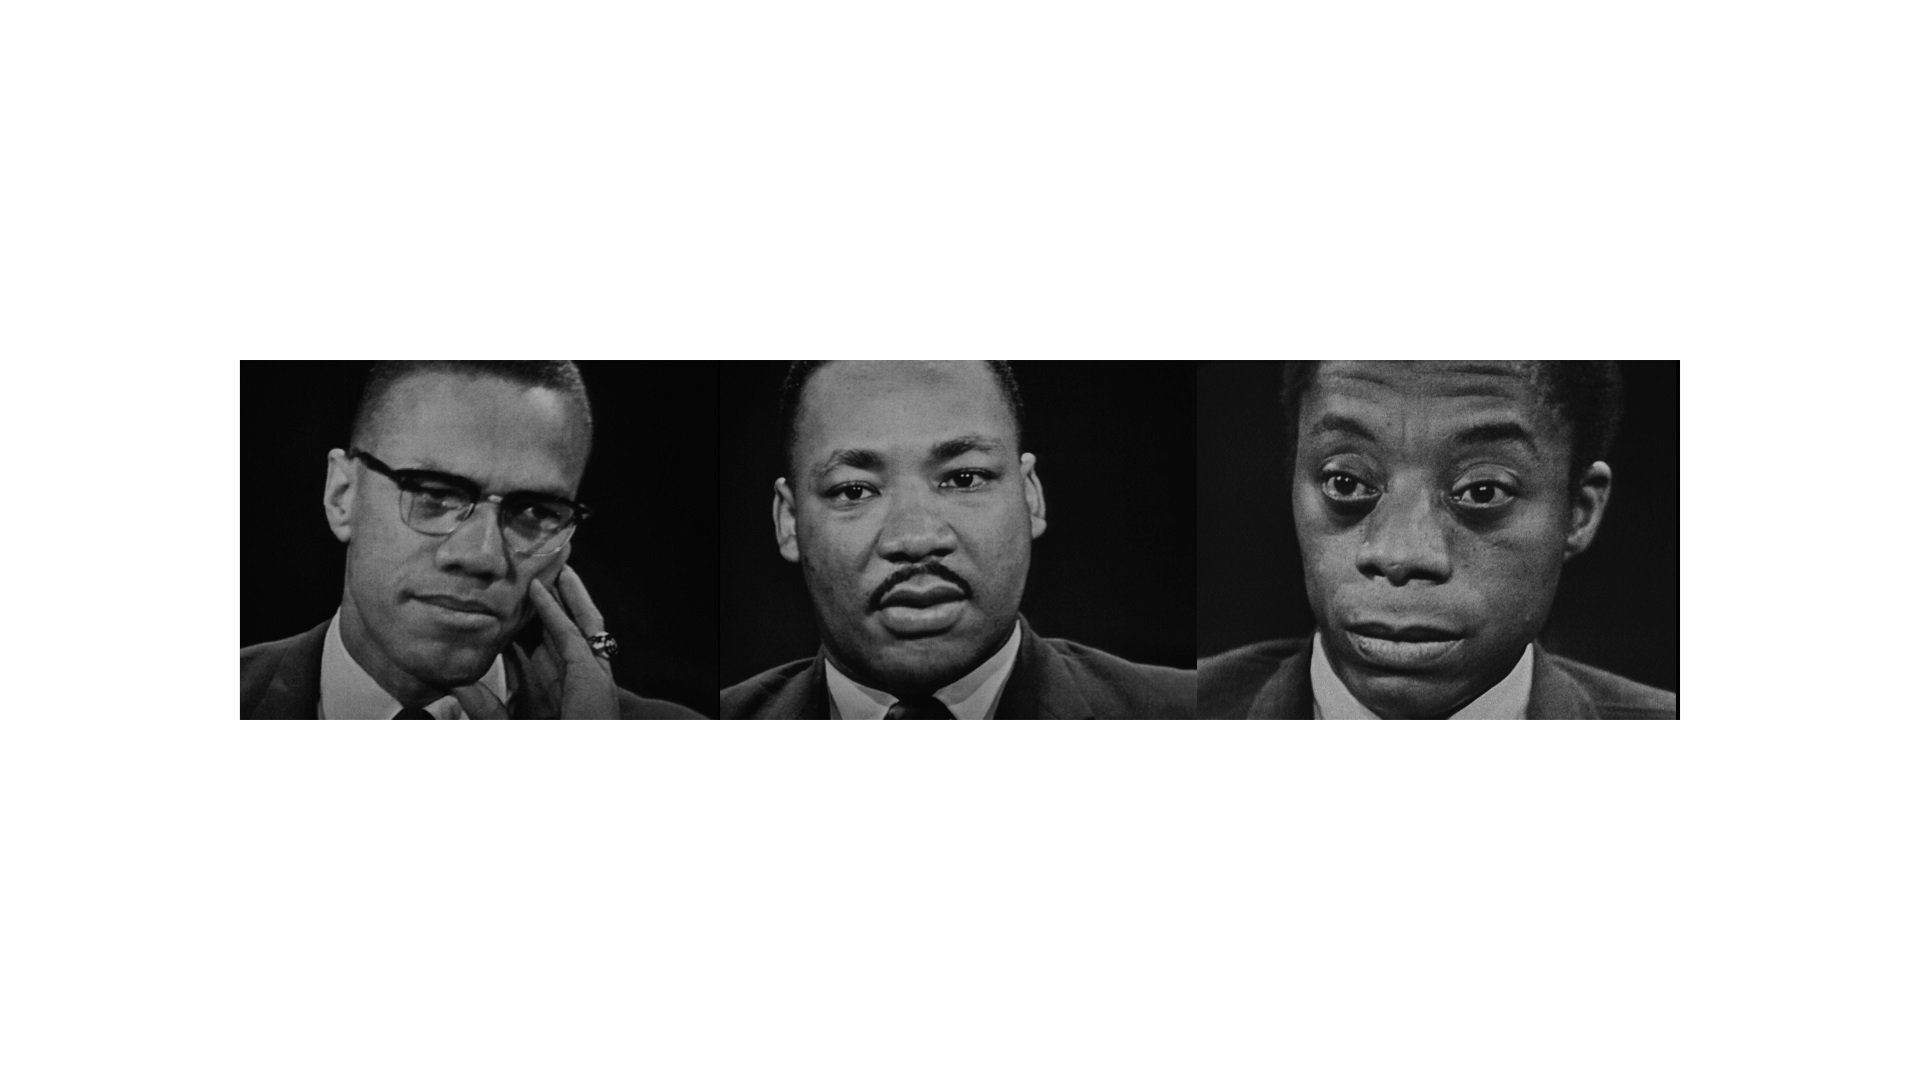  Fot. z filmu “Nie jestem twoim murzynem” (“I Am not Your Negro”), reż. Raoul Peck, USA 2016, 105 min 